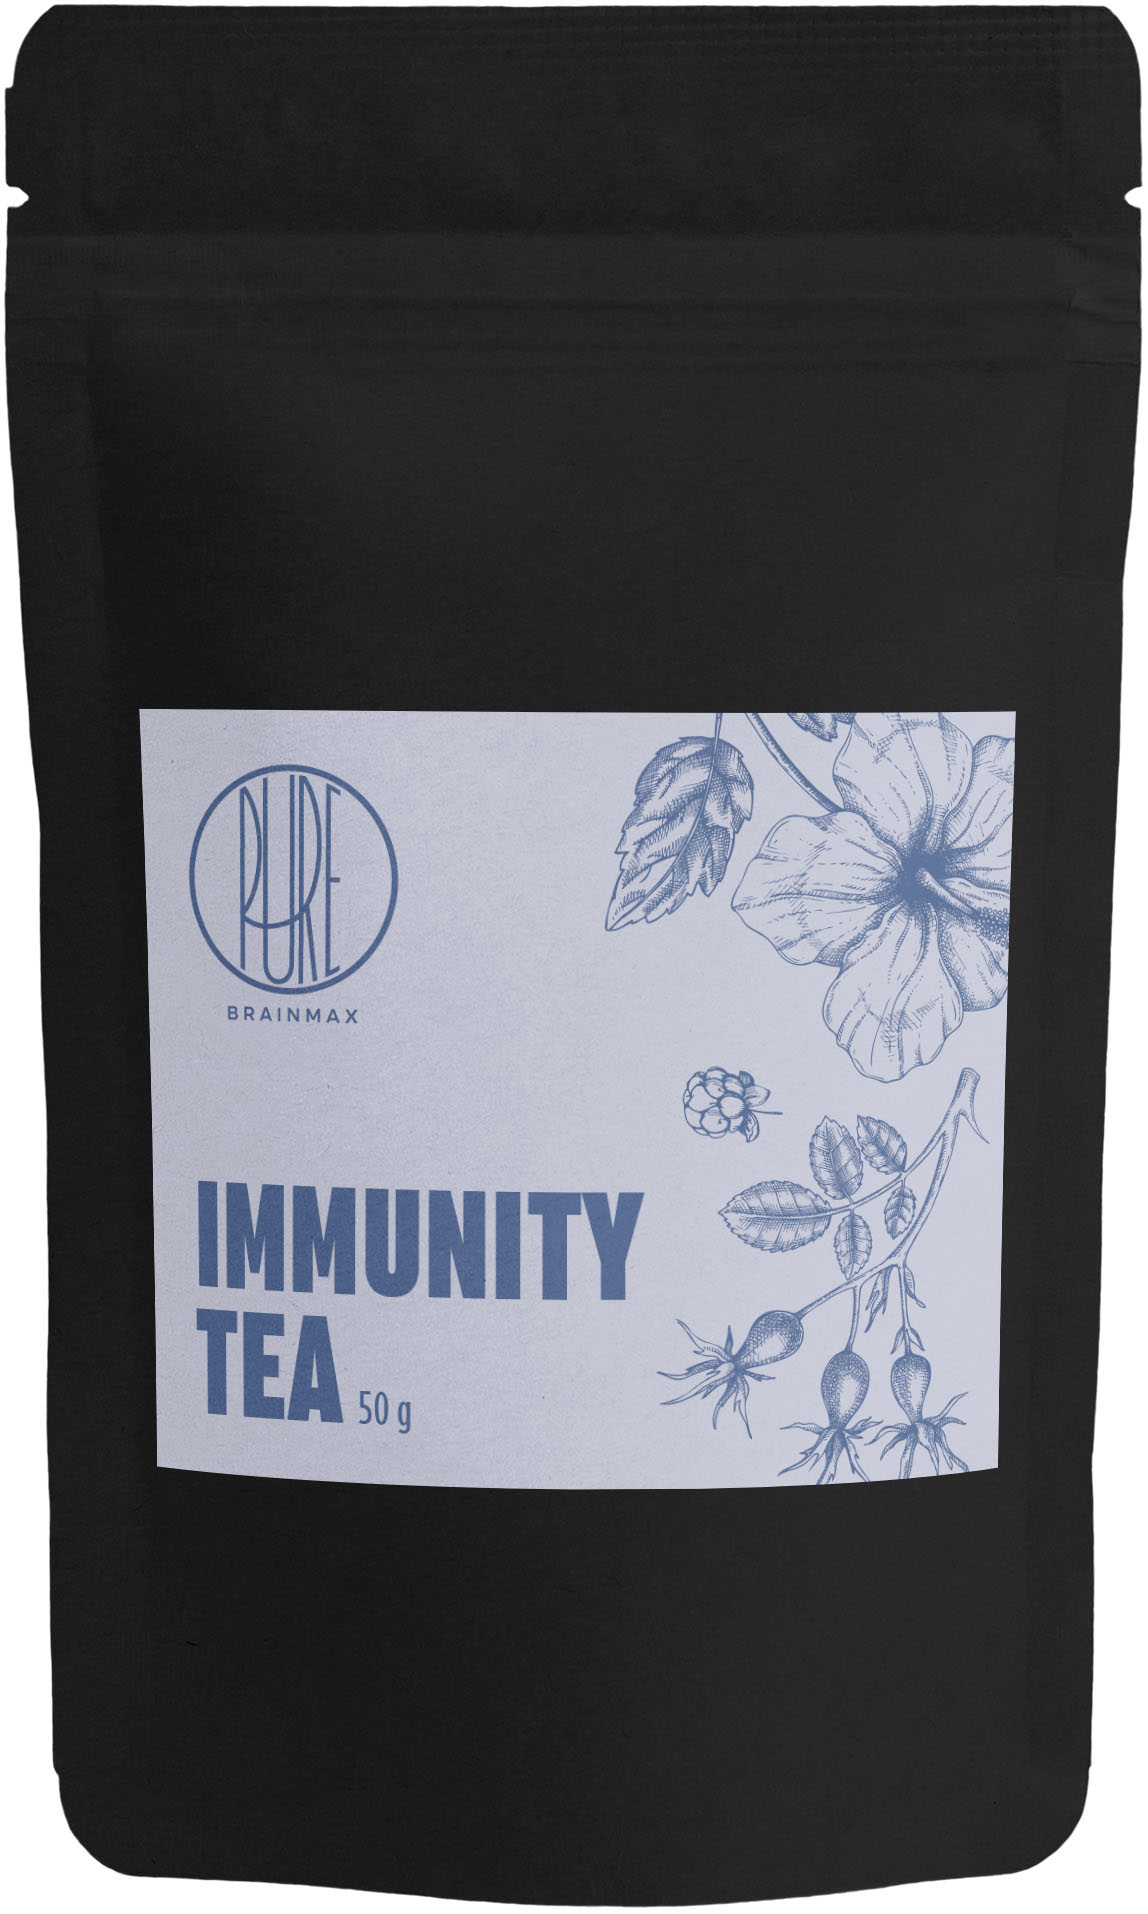 BrainMax Pure Immunity Tea, čaj pro silnou imunitu, 50 g Objem: 50 g Ovocný čaj se směsí bylin pro obranyschopnost organismu